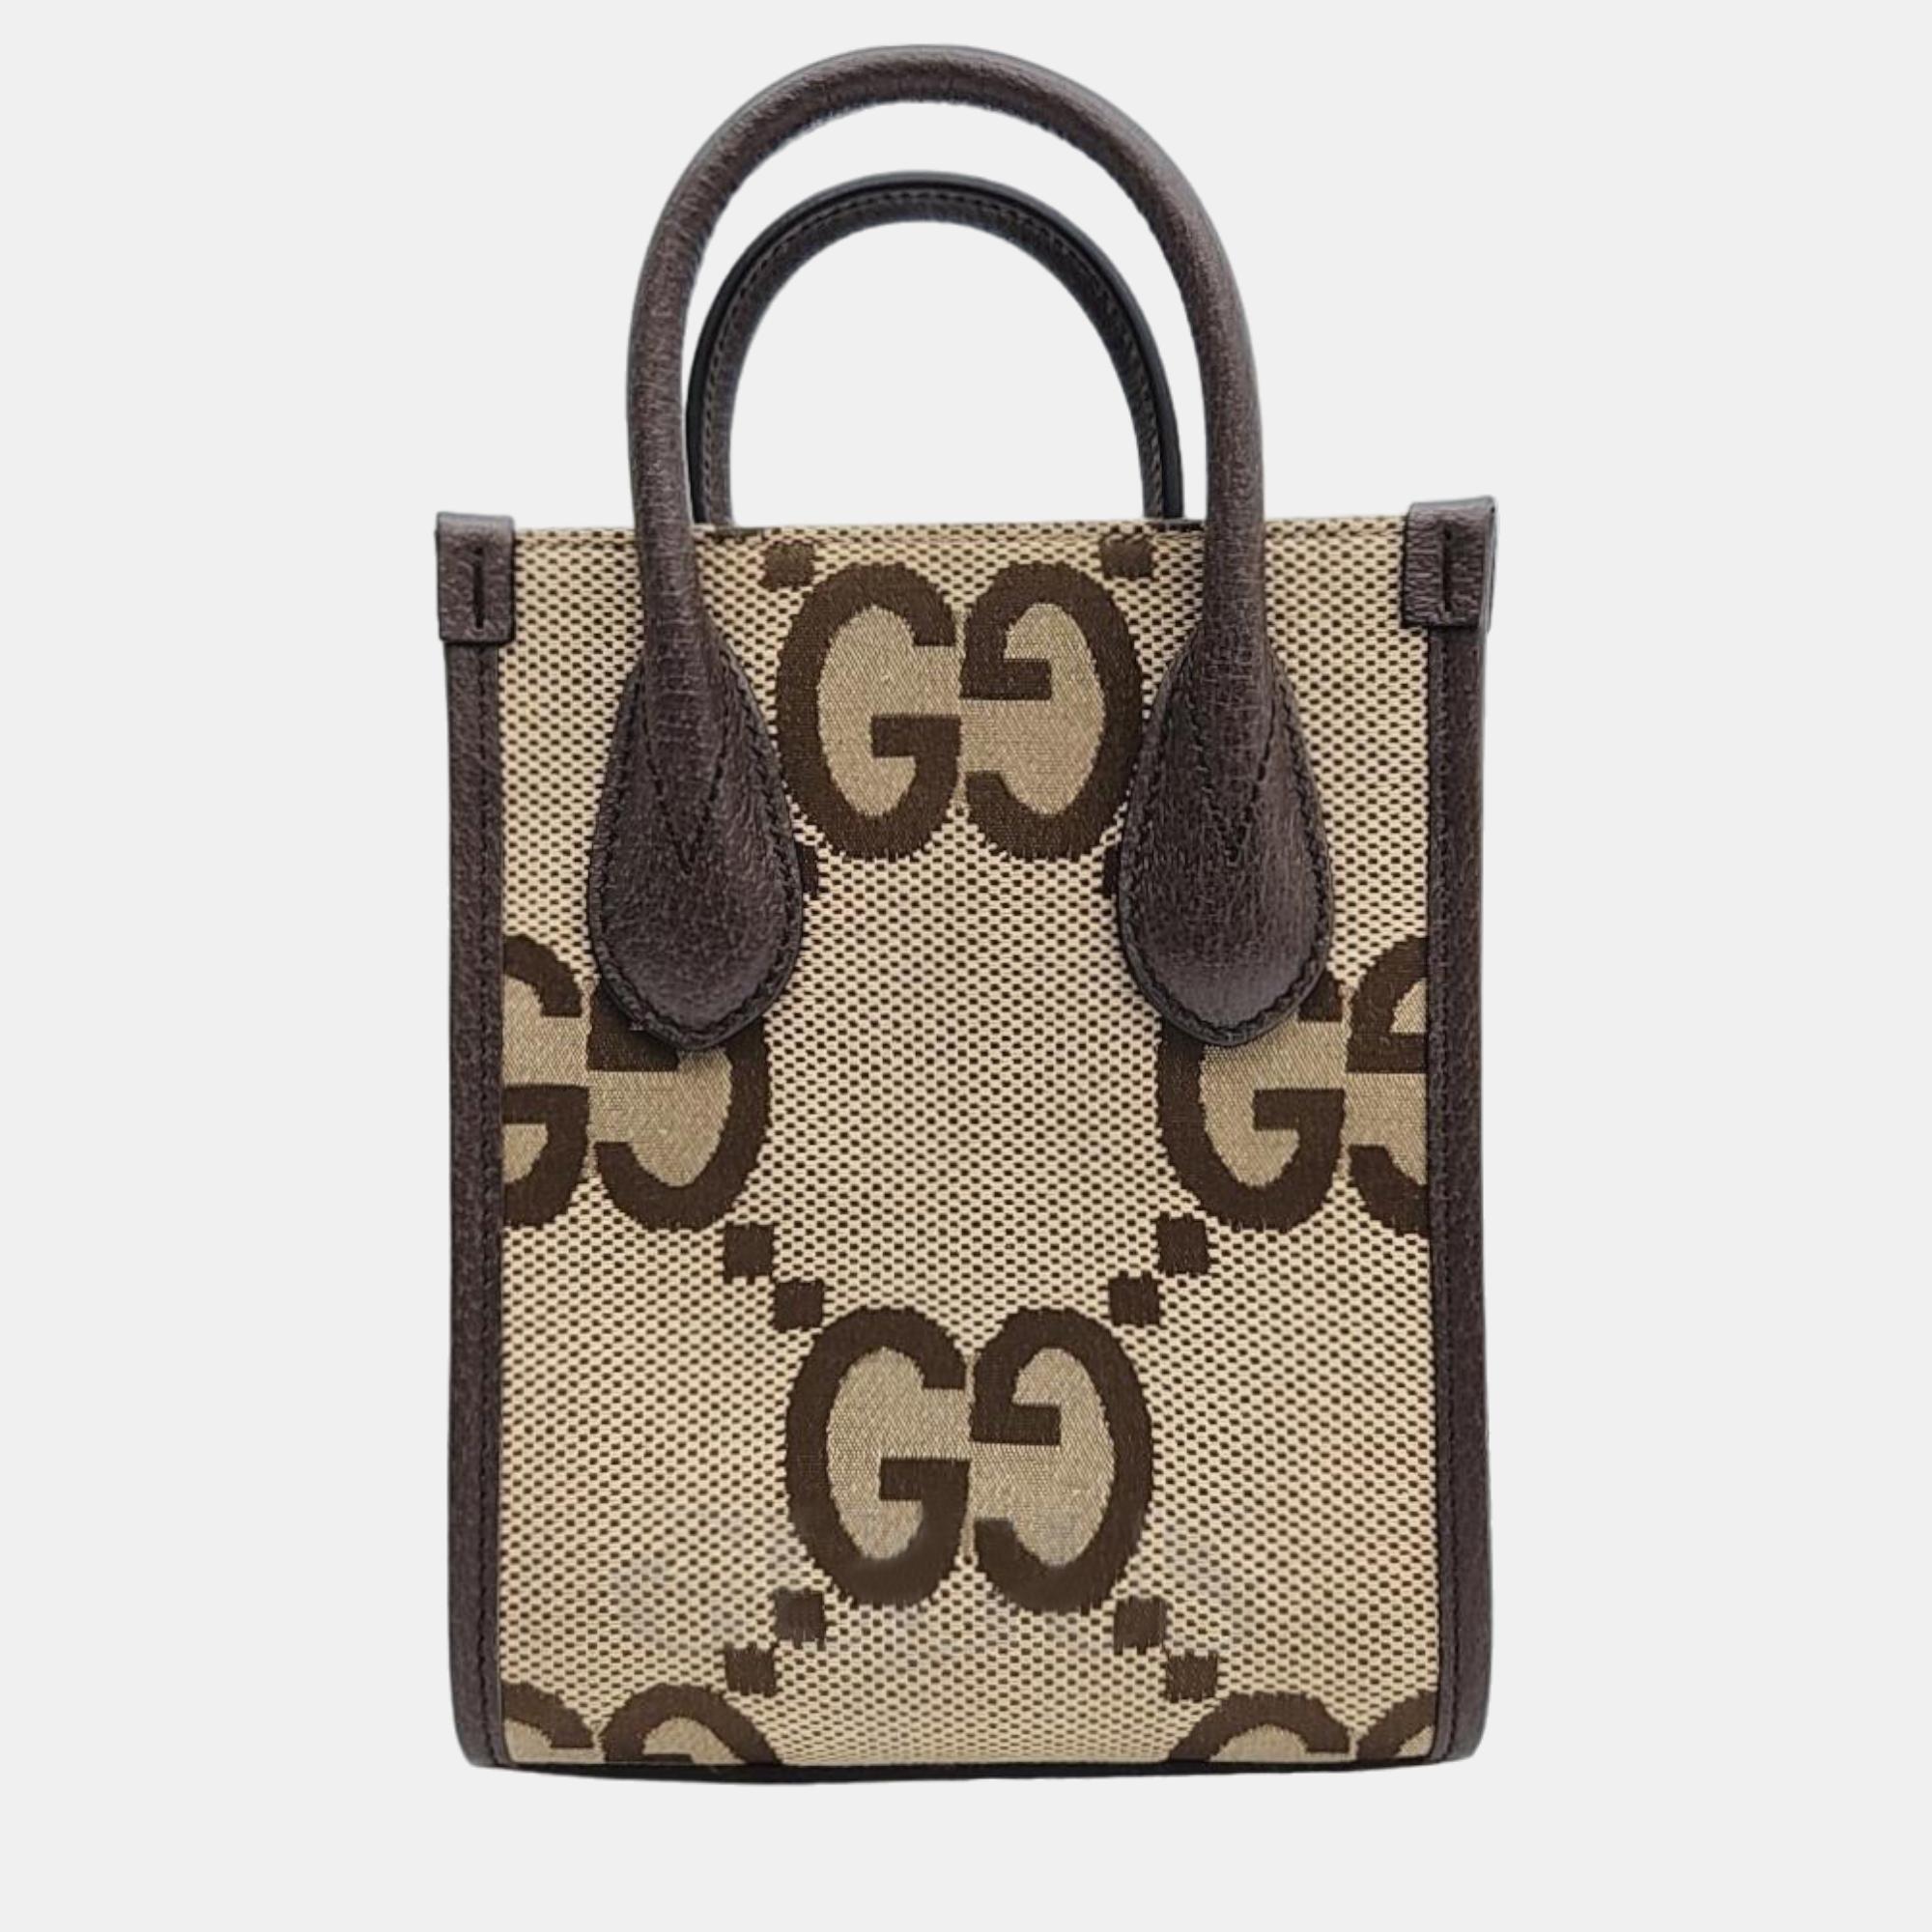 Gucci gg ophidia mini tote bag (699406)